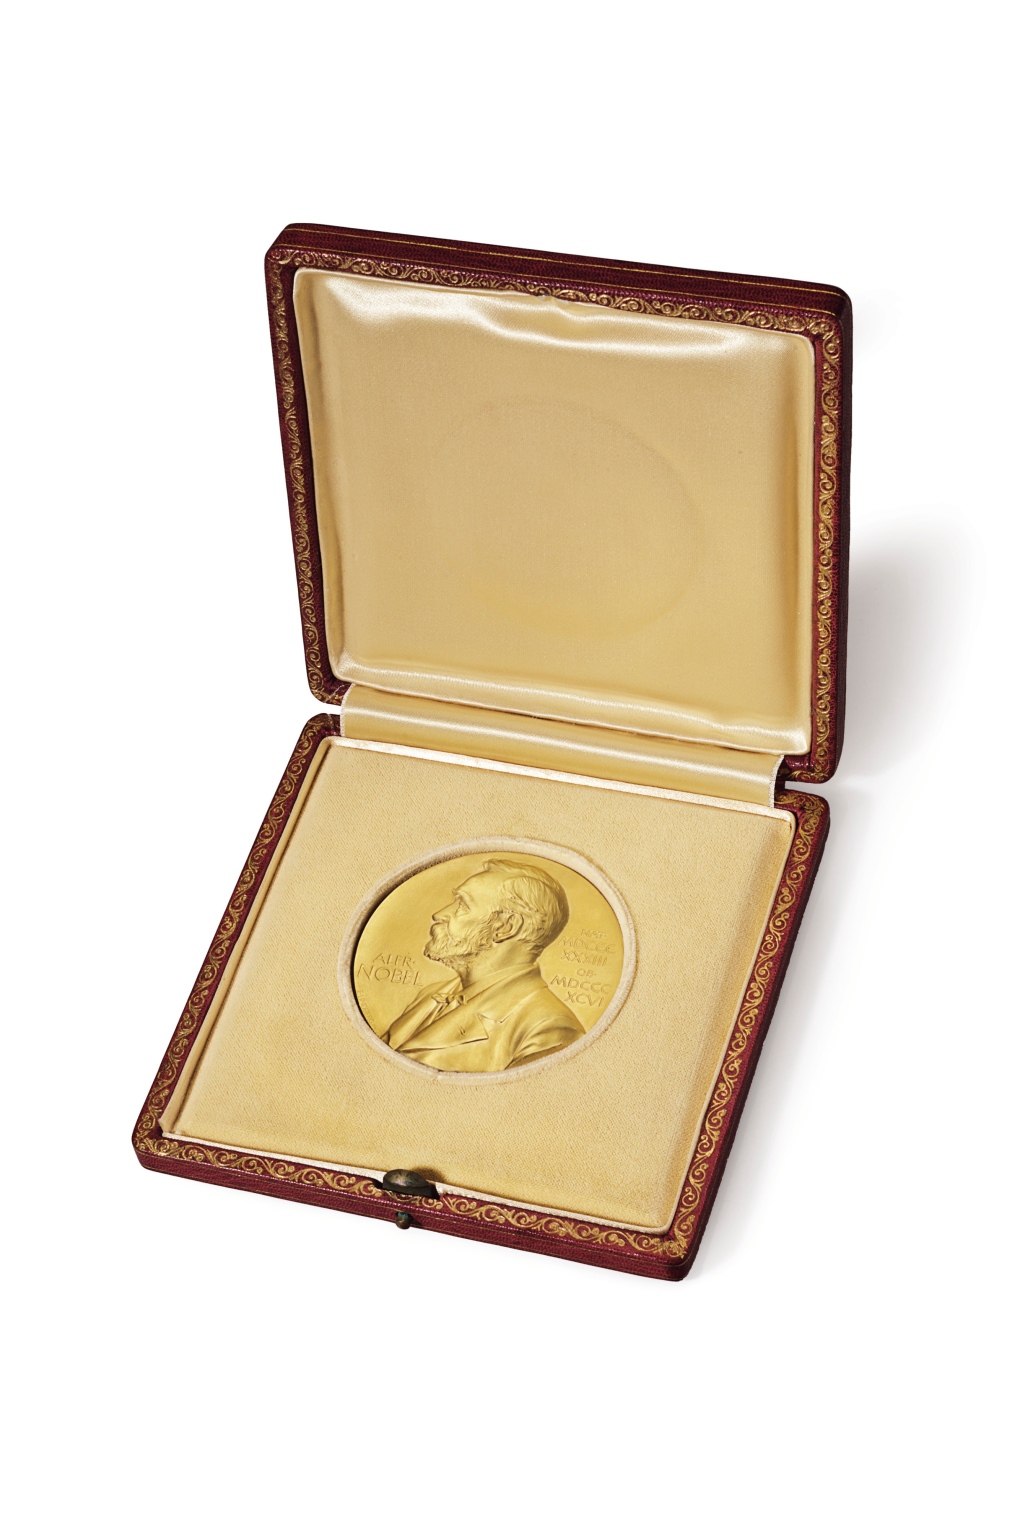 Nobel Prize medal sold for $4.7 million